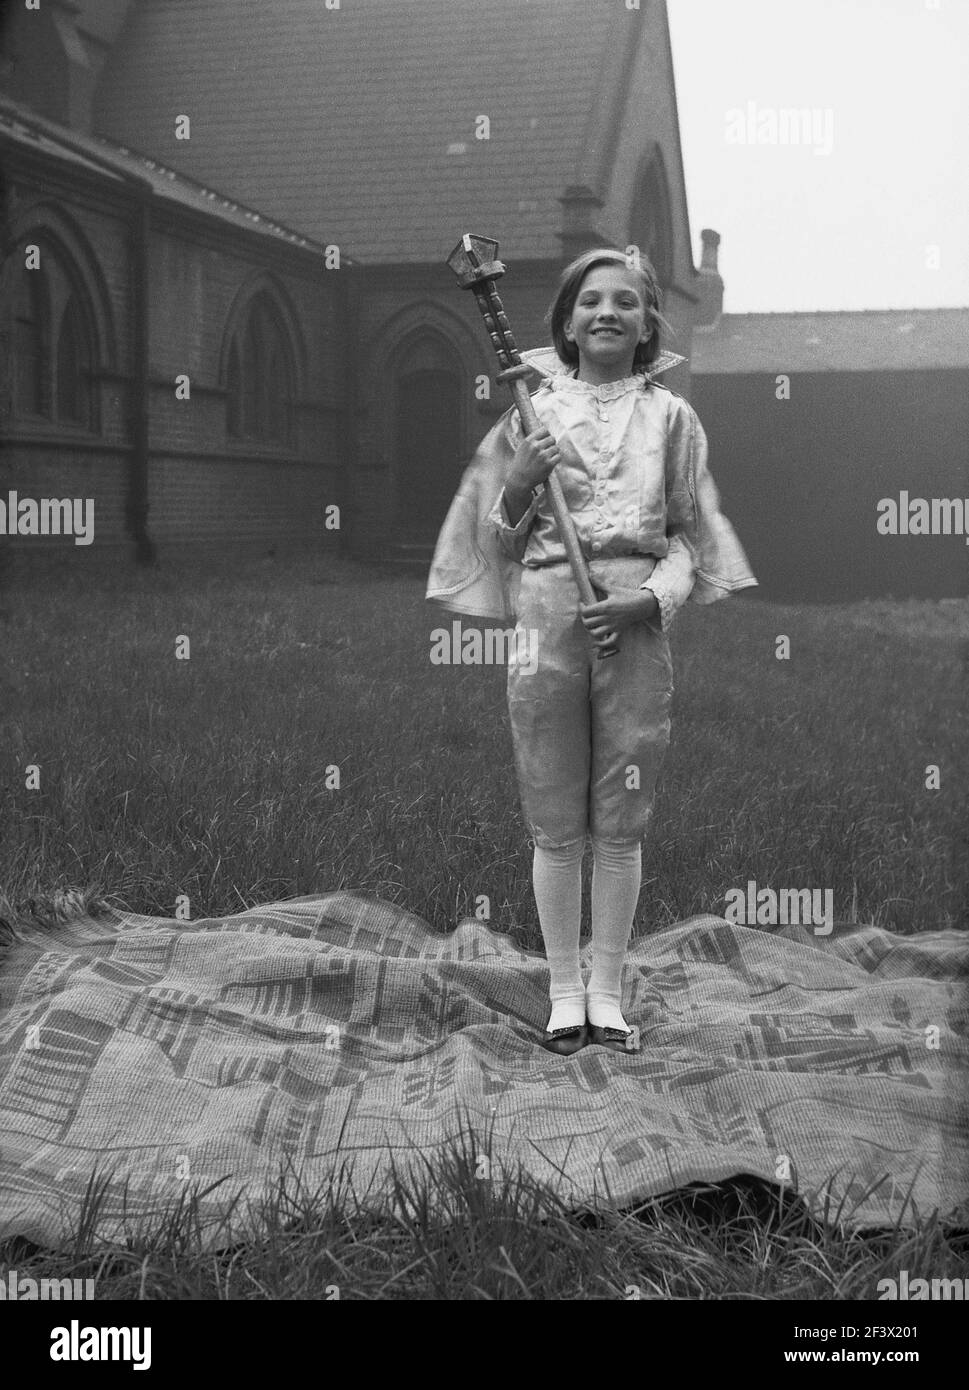 1958, storica, una giovane ragazza in costume, in possesso di un bastone, in piedi su un tappeto nel terreno di una chiesa per una foto, prima di partecipare alla tradizionale sfilata e festival del giorno di maggio, Leeds, Inghilterra, Regno Unito. Foto Stock